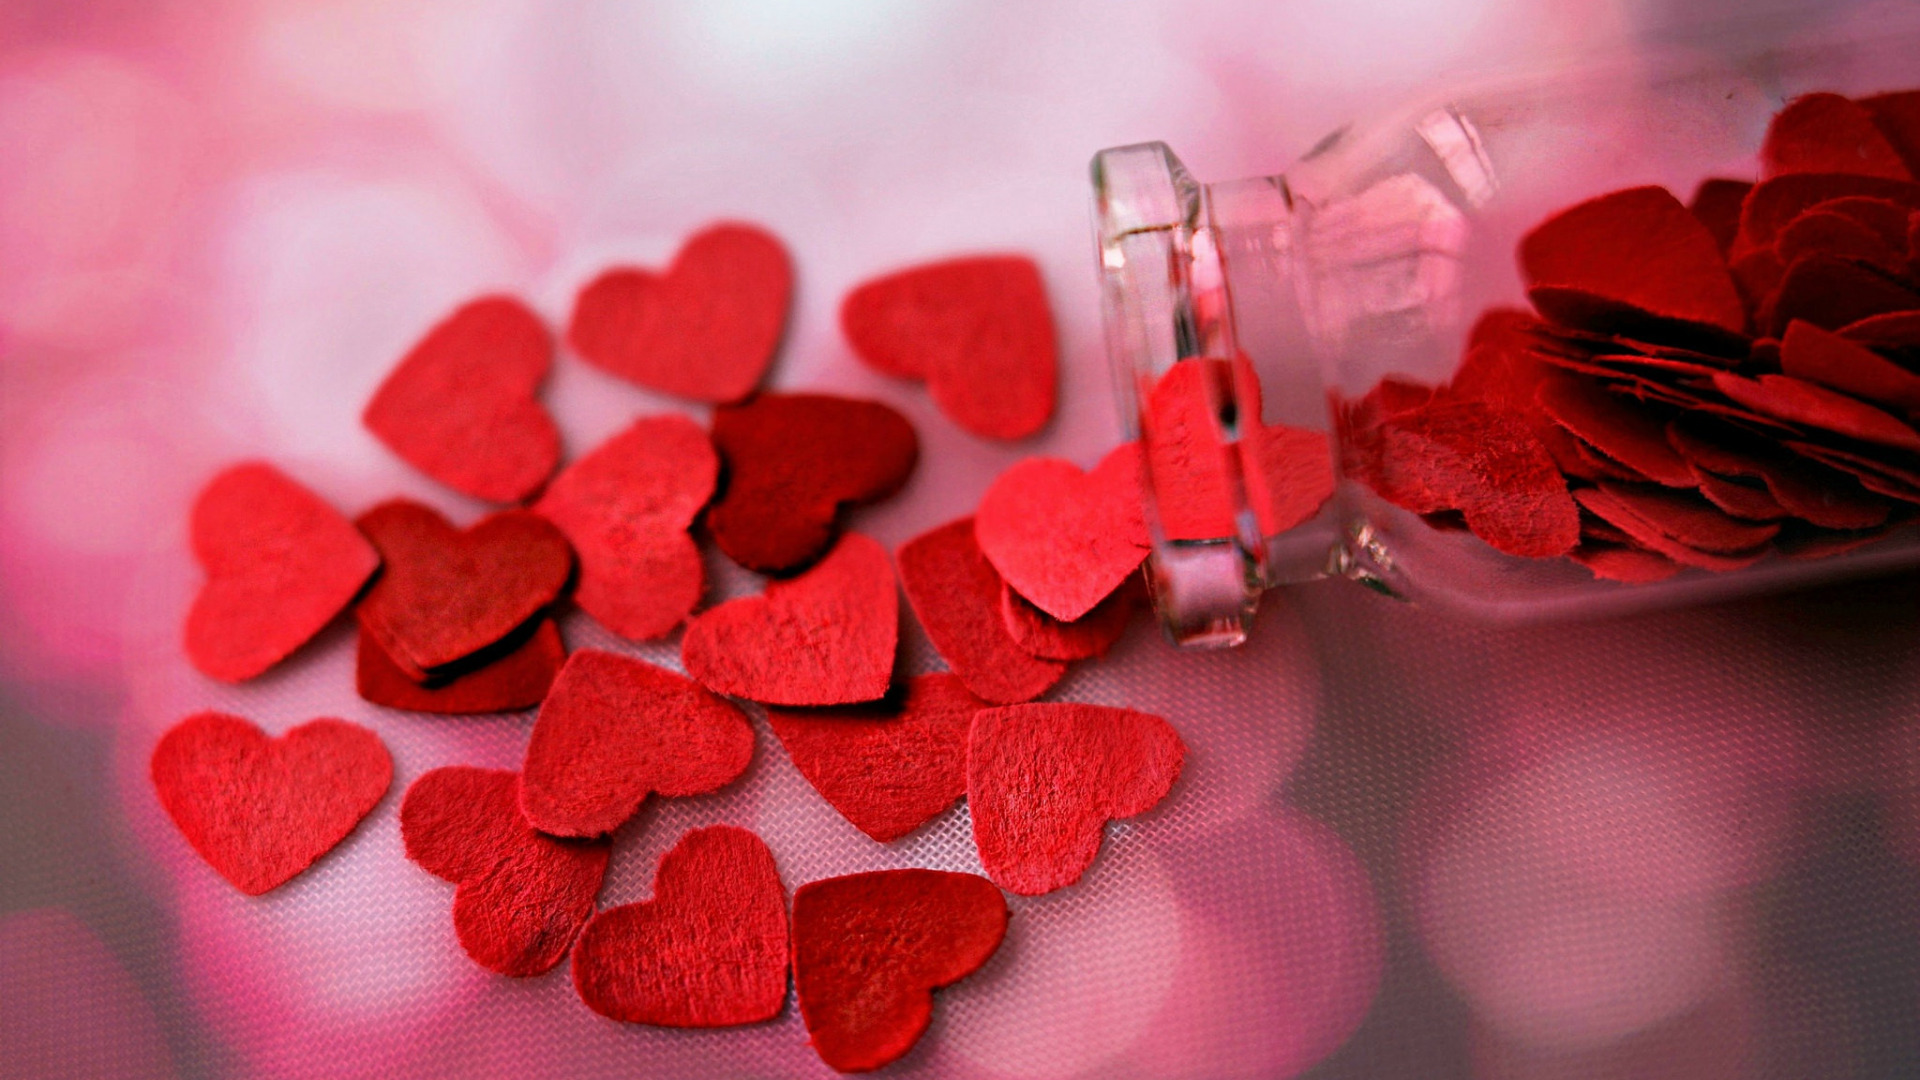 عکس پروفایل عاشقانه با شیشه ای از قلب های قرمز گوگولی 